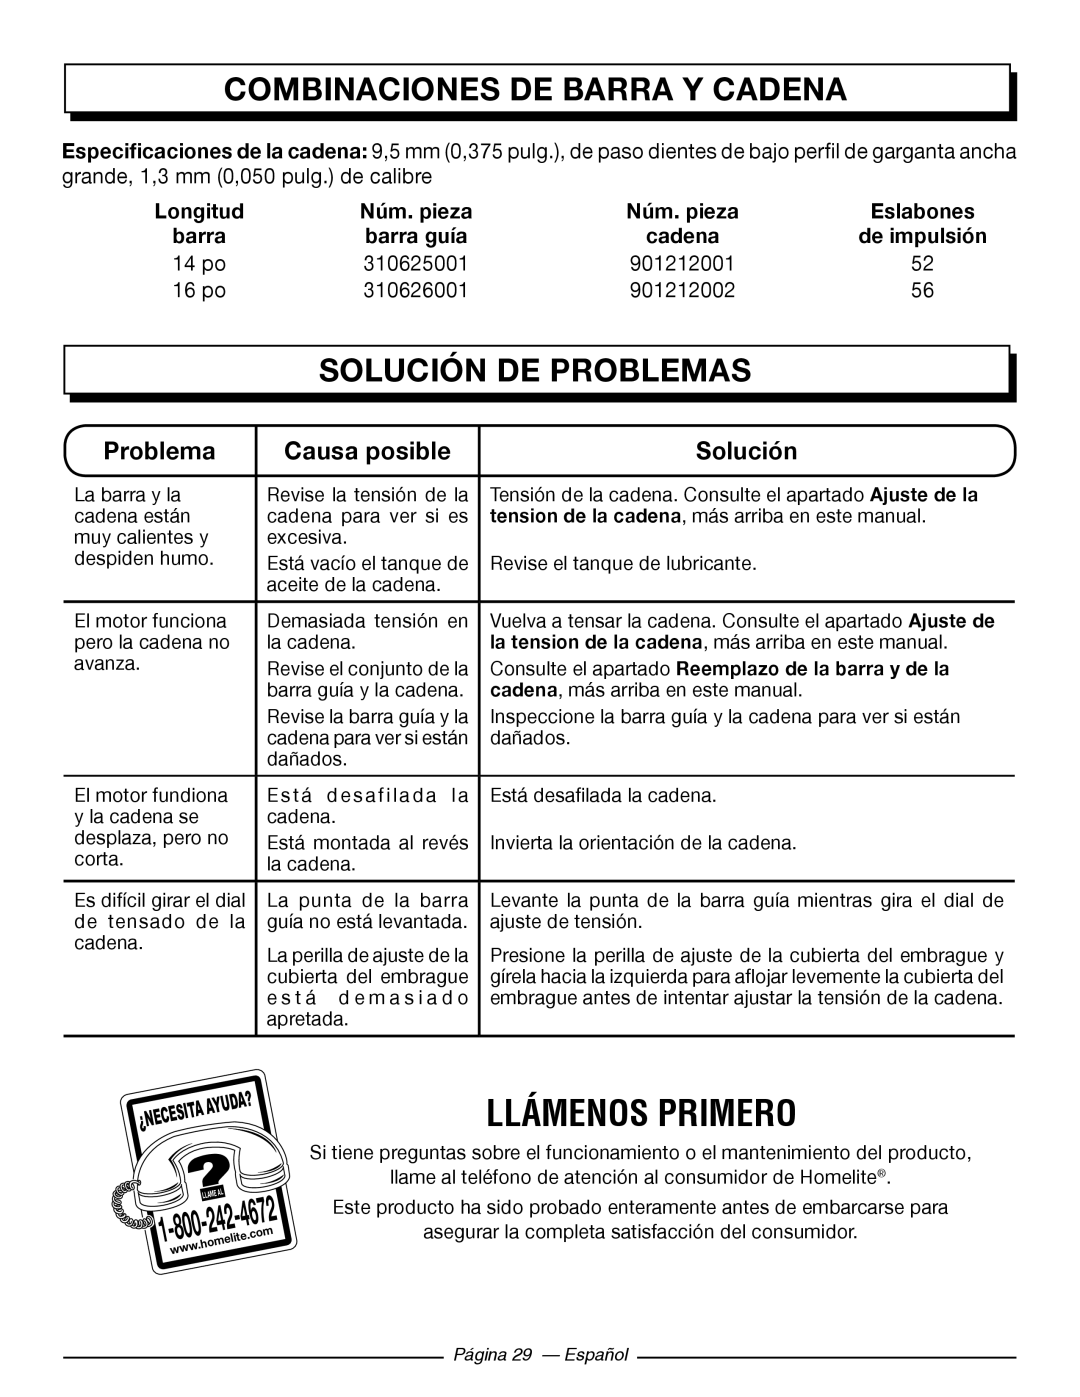 Homelite UT43102 Llámenos Primero, Combinaciones De Barra Y Cadena, Solución De Problemas, Causa posible, Núm. pieza, 4672 